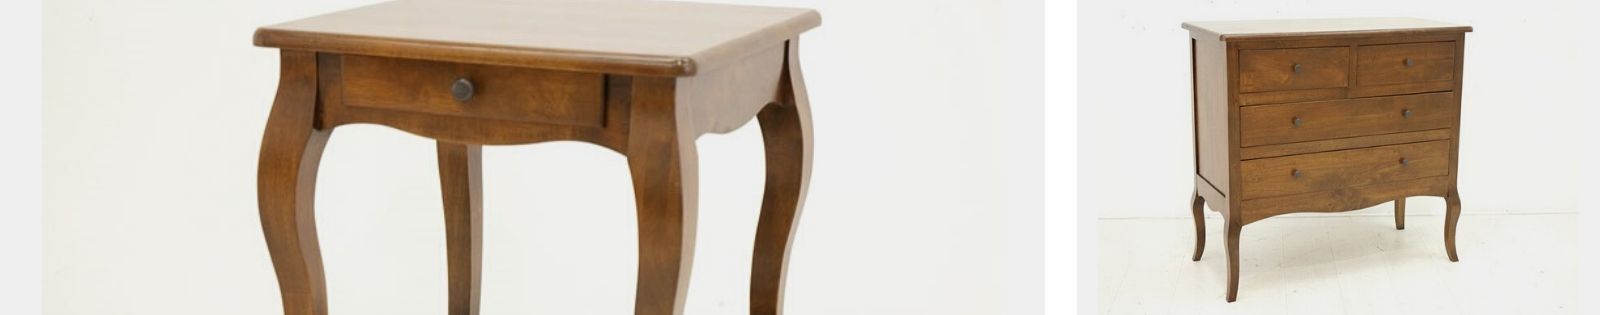 Collection Florencia : meubles de qualité en hévéa pour la chambre.